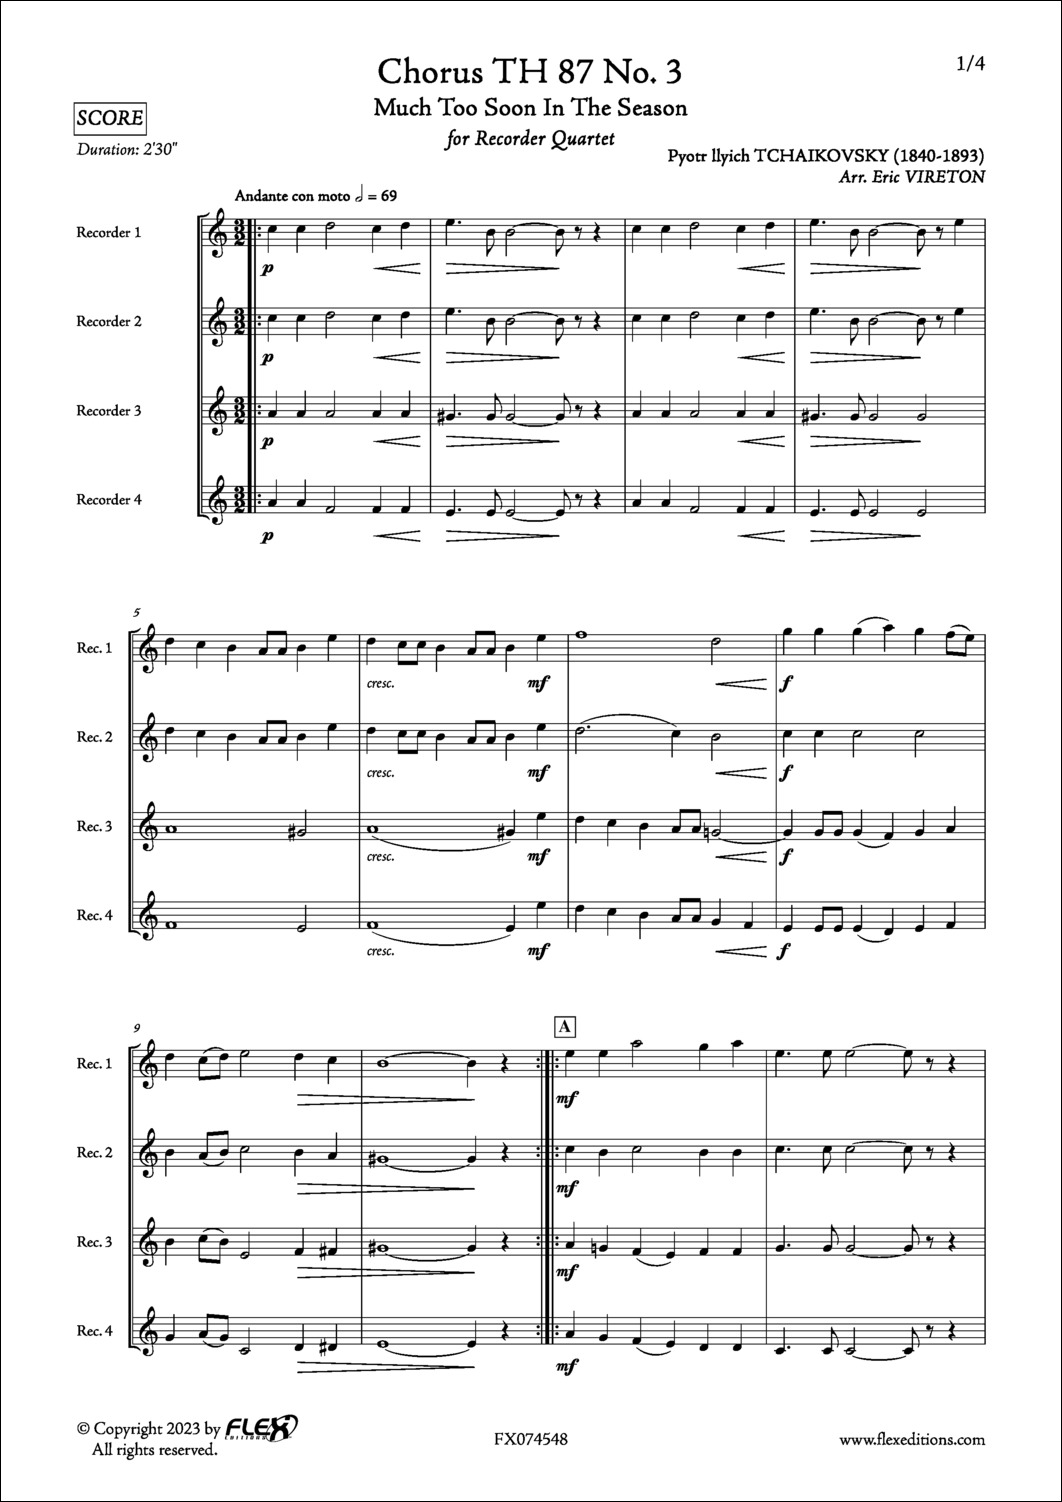 Chorus TH 87 No. 3 - P. I. TCHAIKOVSKY - <font color=#666666>Recorder Quartet</font>